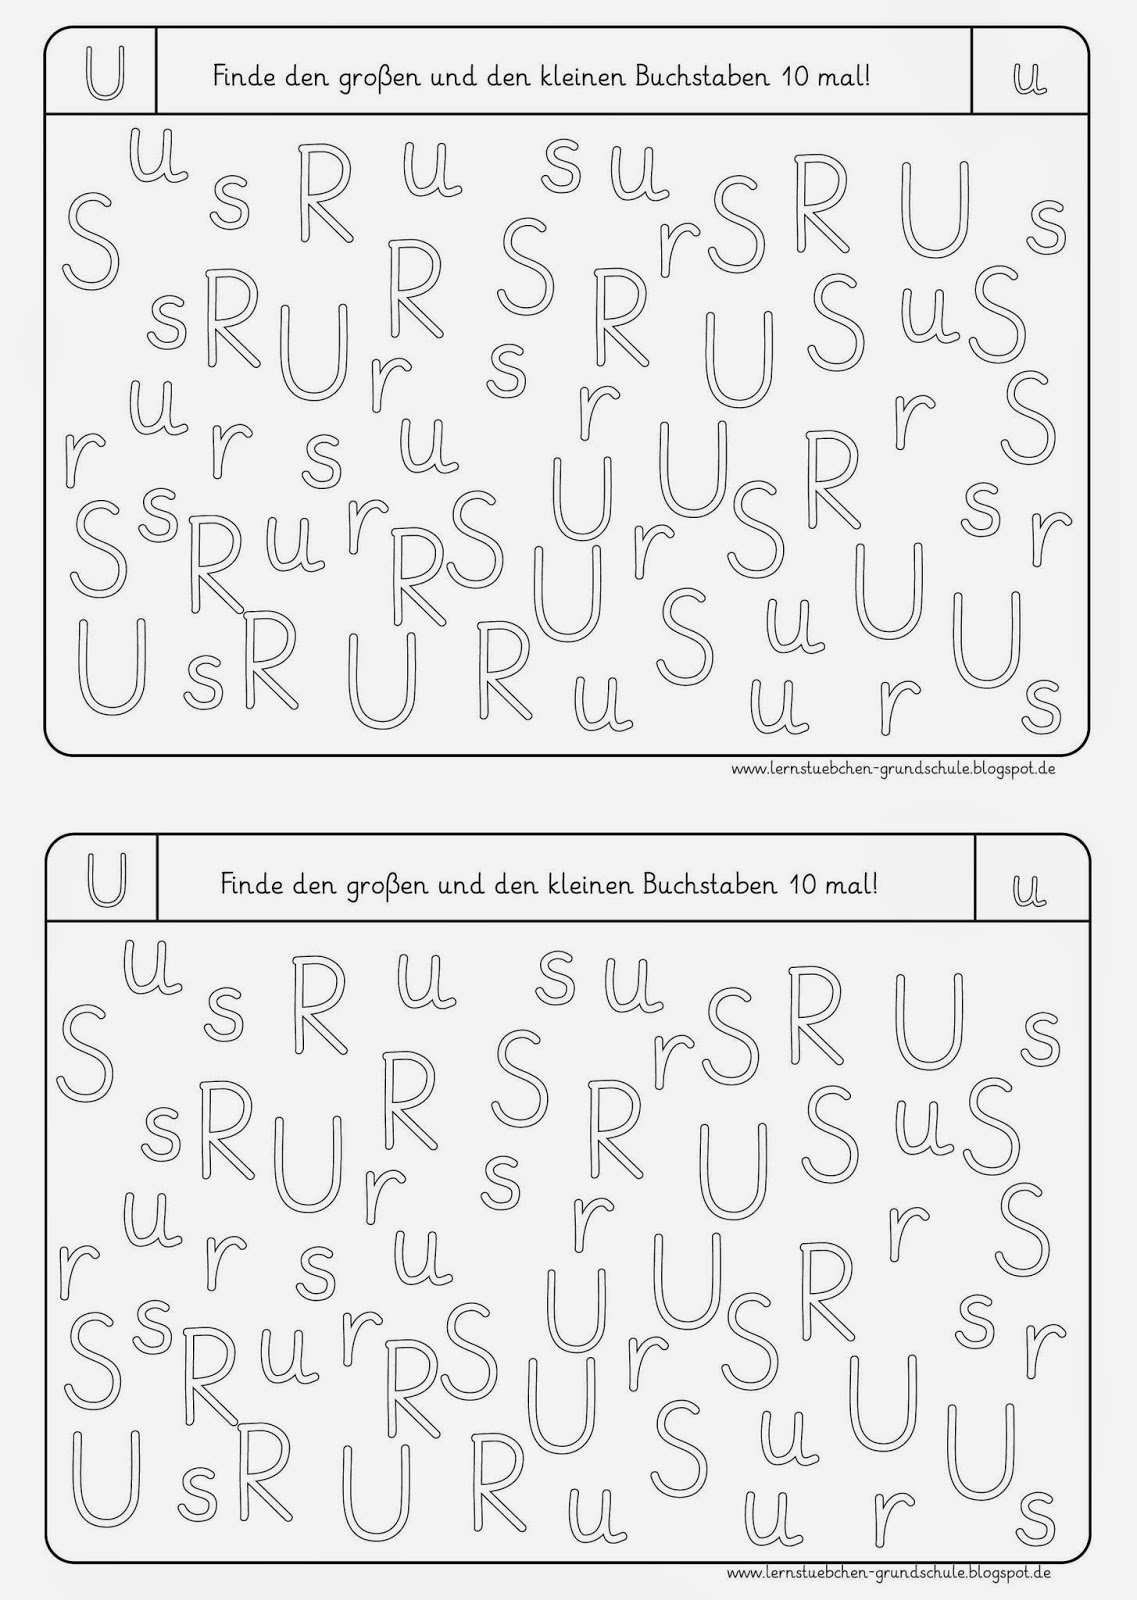 Lernstübchen: Buchstaben erkennen U, S, R, N, I, T